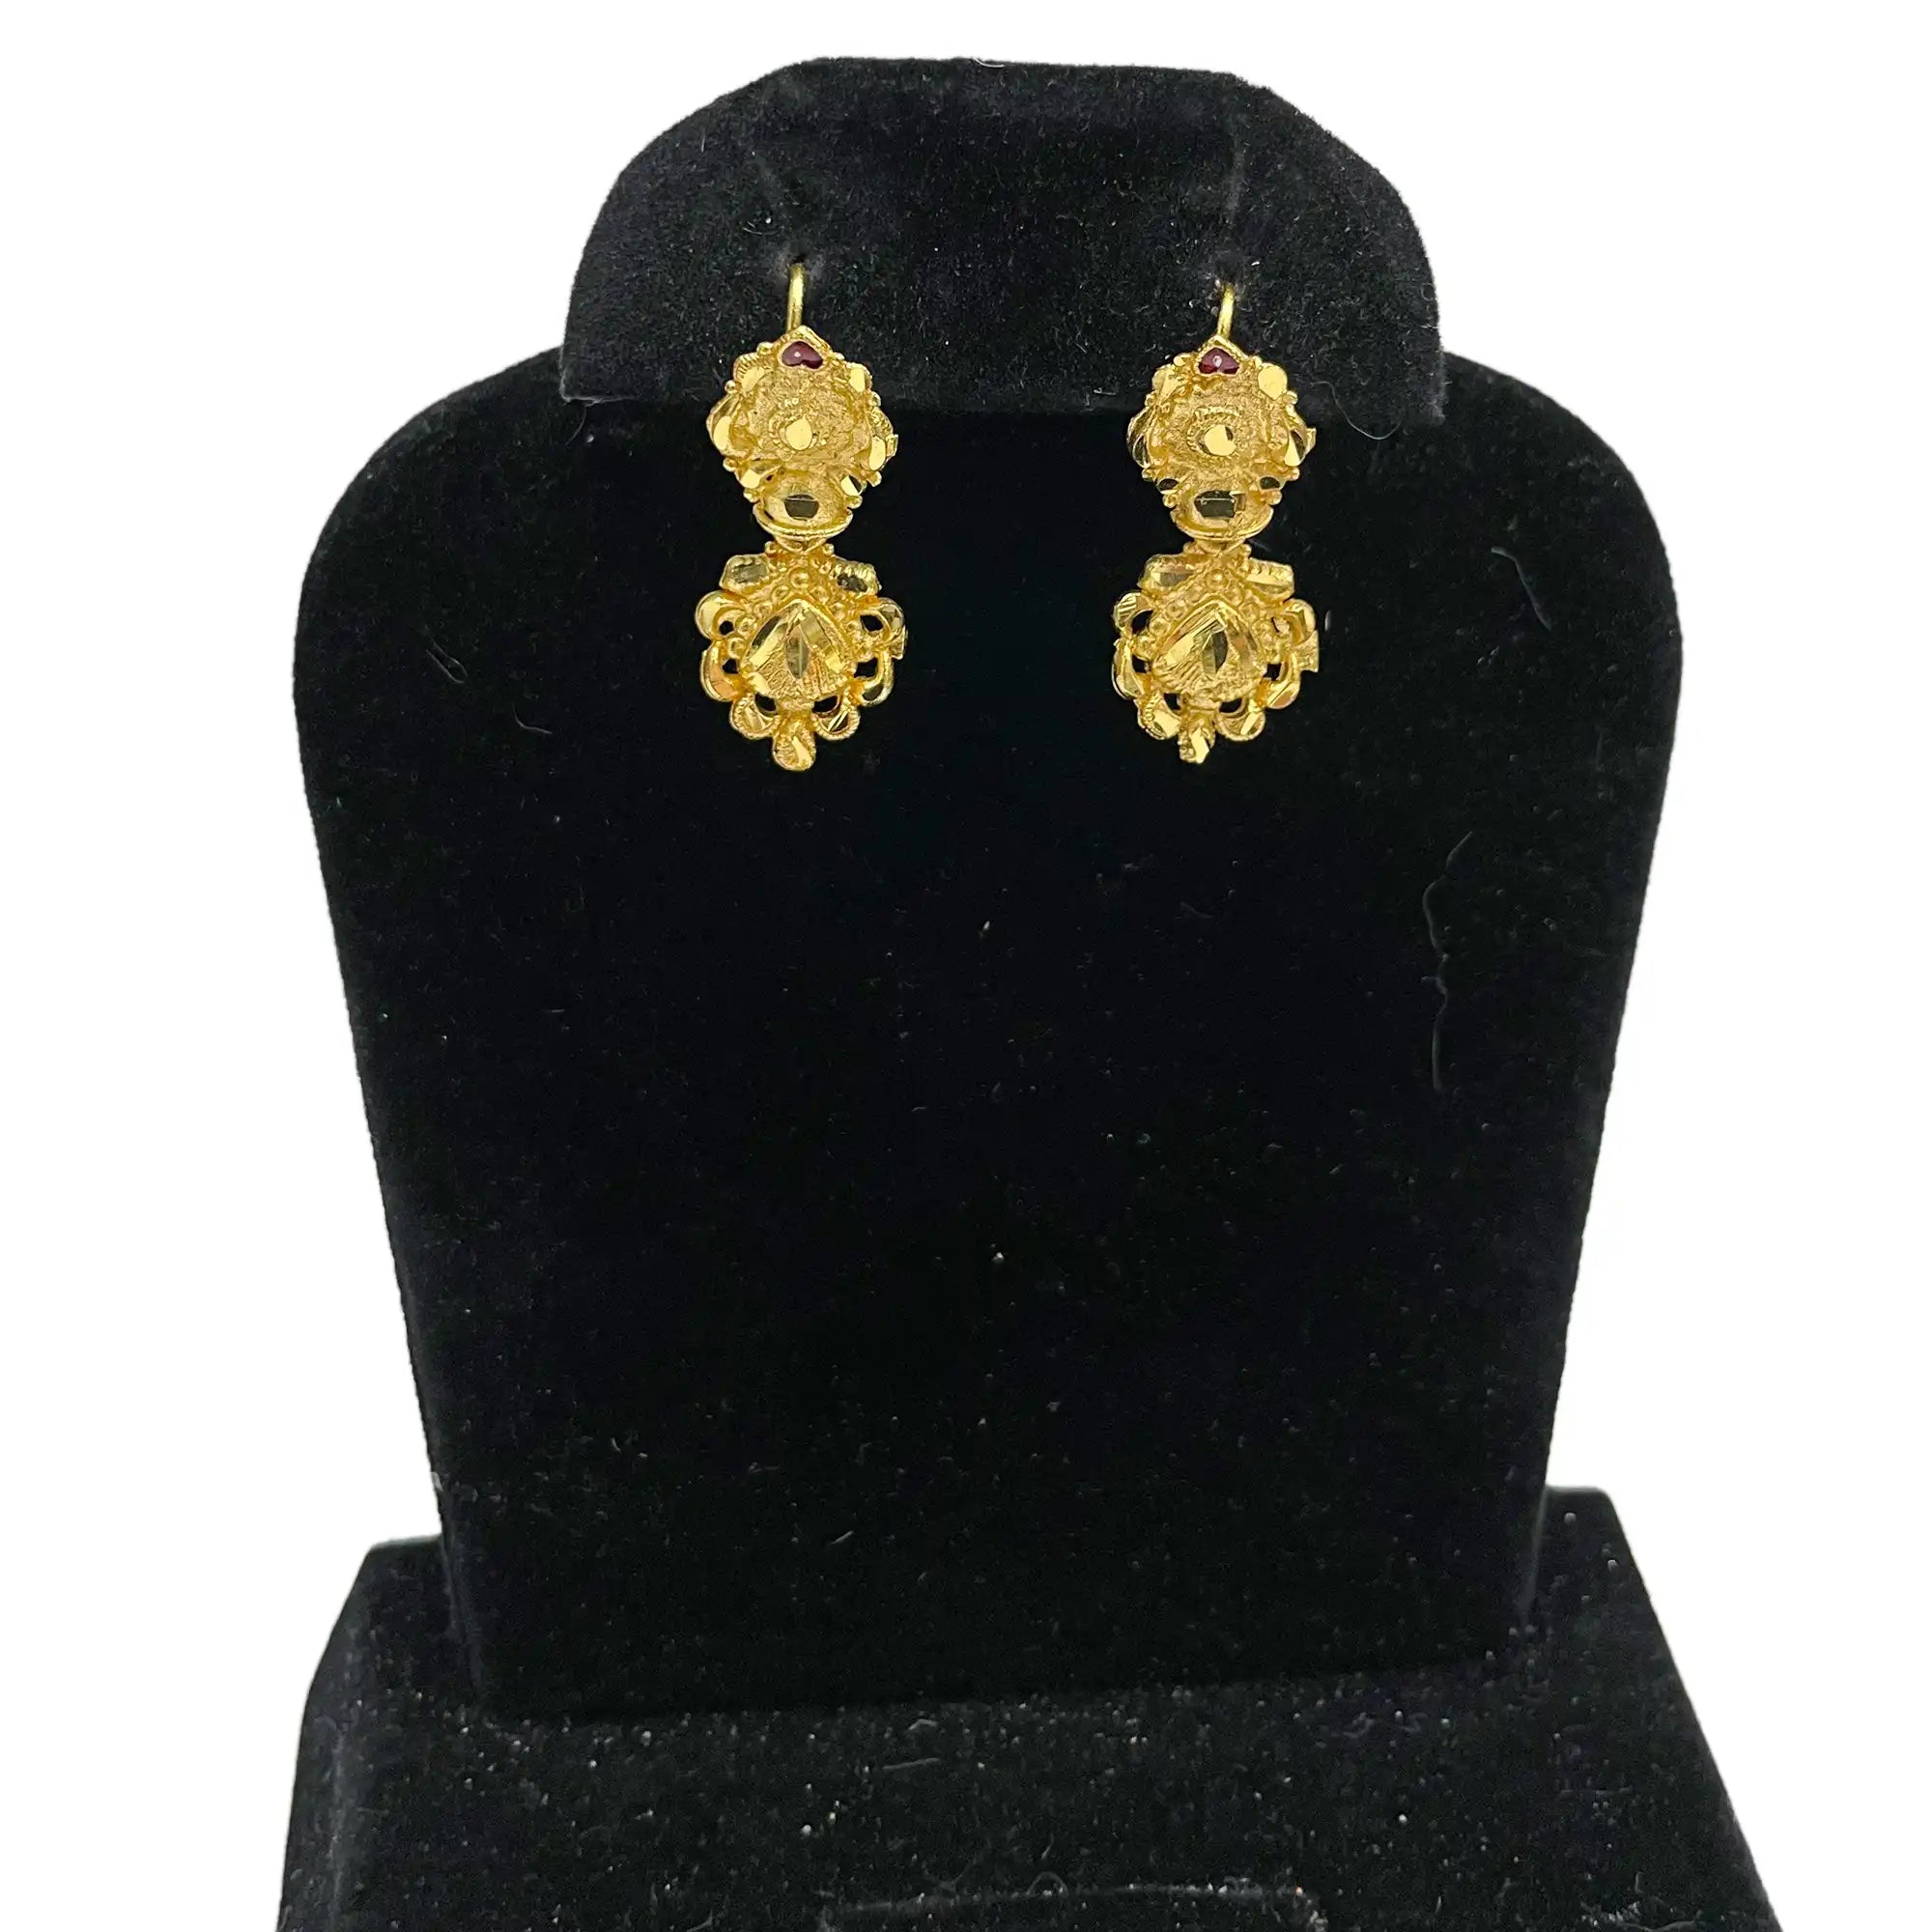 22k gold plated earrings, brass earrings, traditional earrings, indian earrings, stud earrings